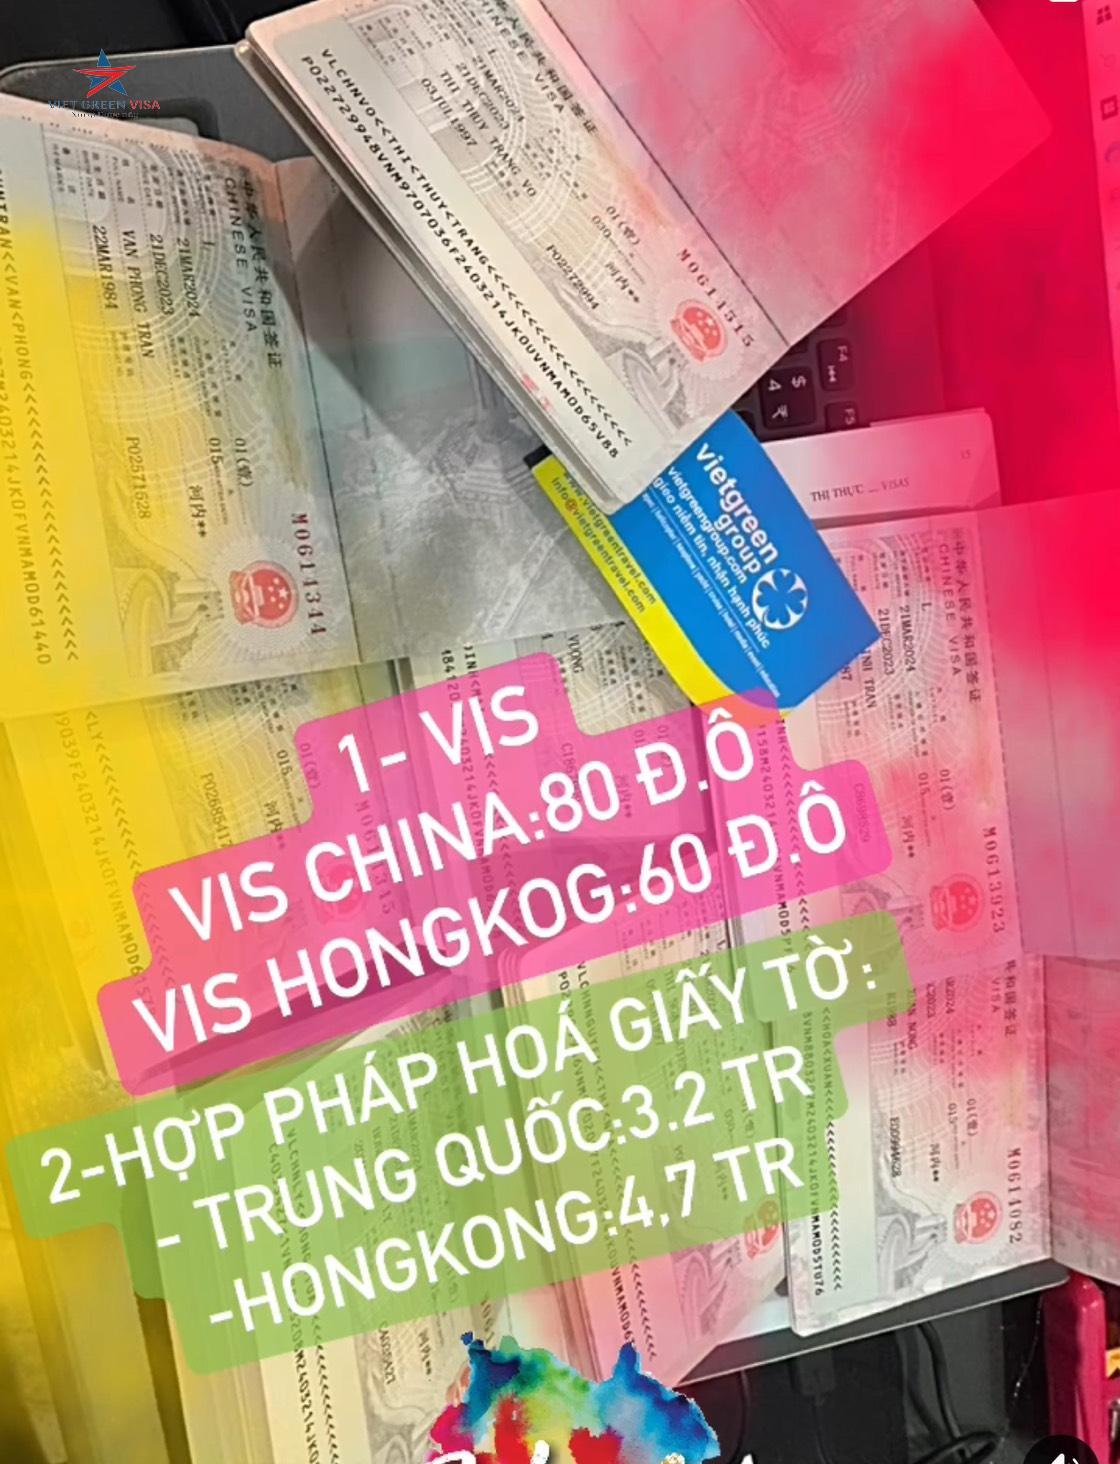 Dịch vụ xin visa Trung Quốc tại Kon Tum chuyên nghiệp